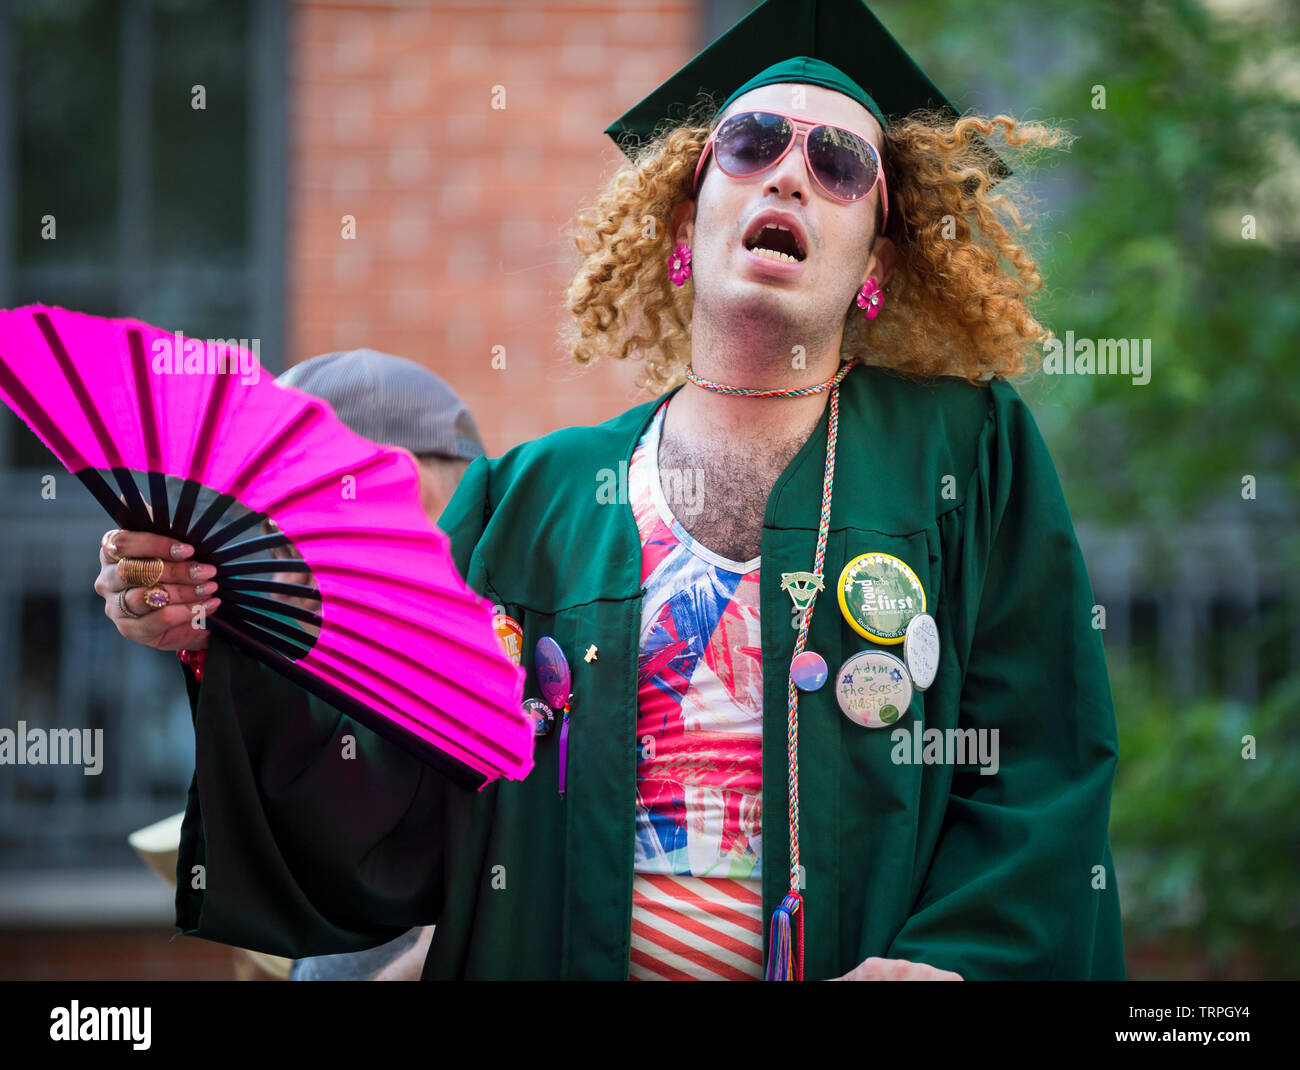 NEW YORK - 25 juin 2017 : Un homme célèbre en costume flamboyant à l'assemblée annuelle gay pride parade à Greenwich Village. Banque D'Images